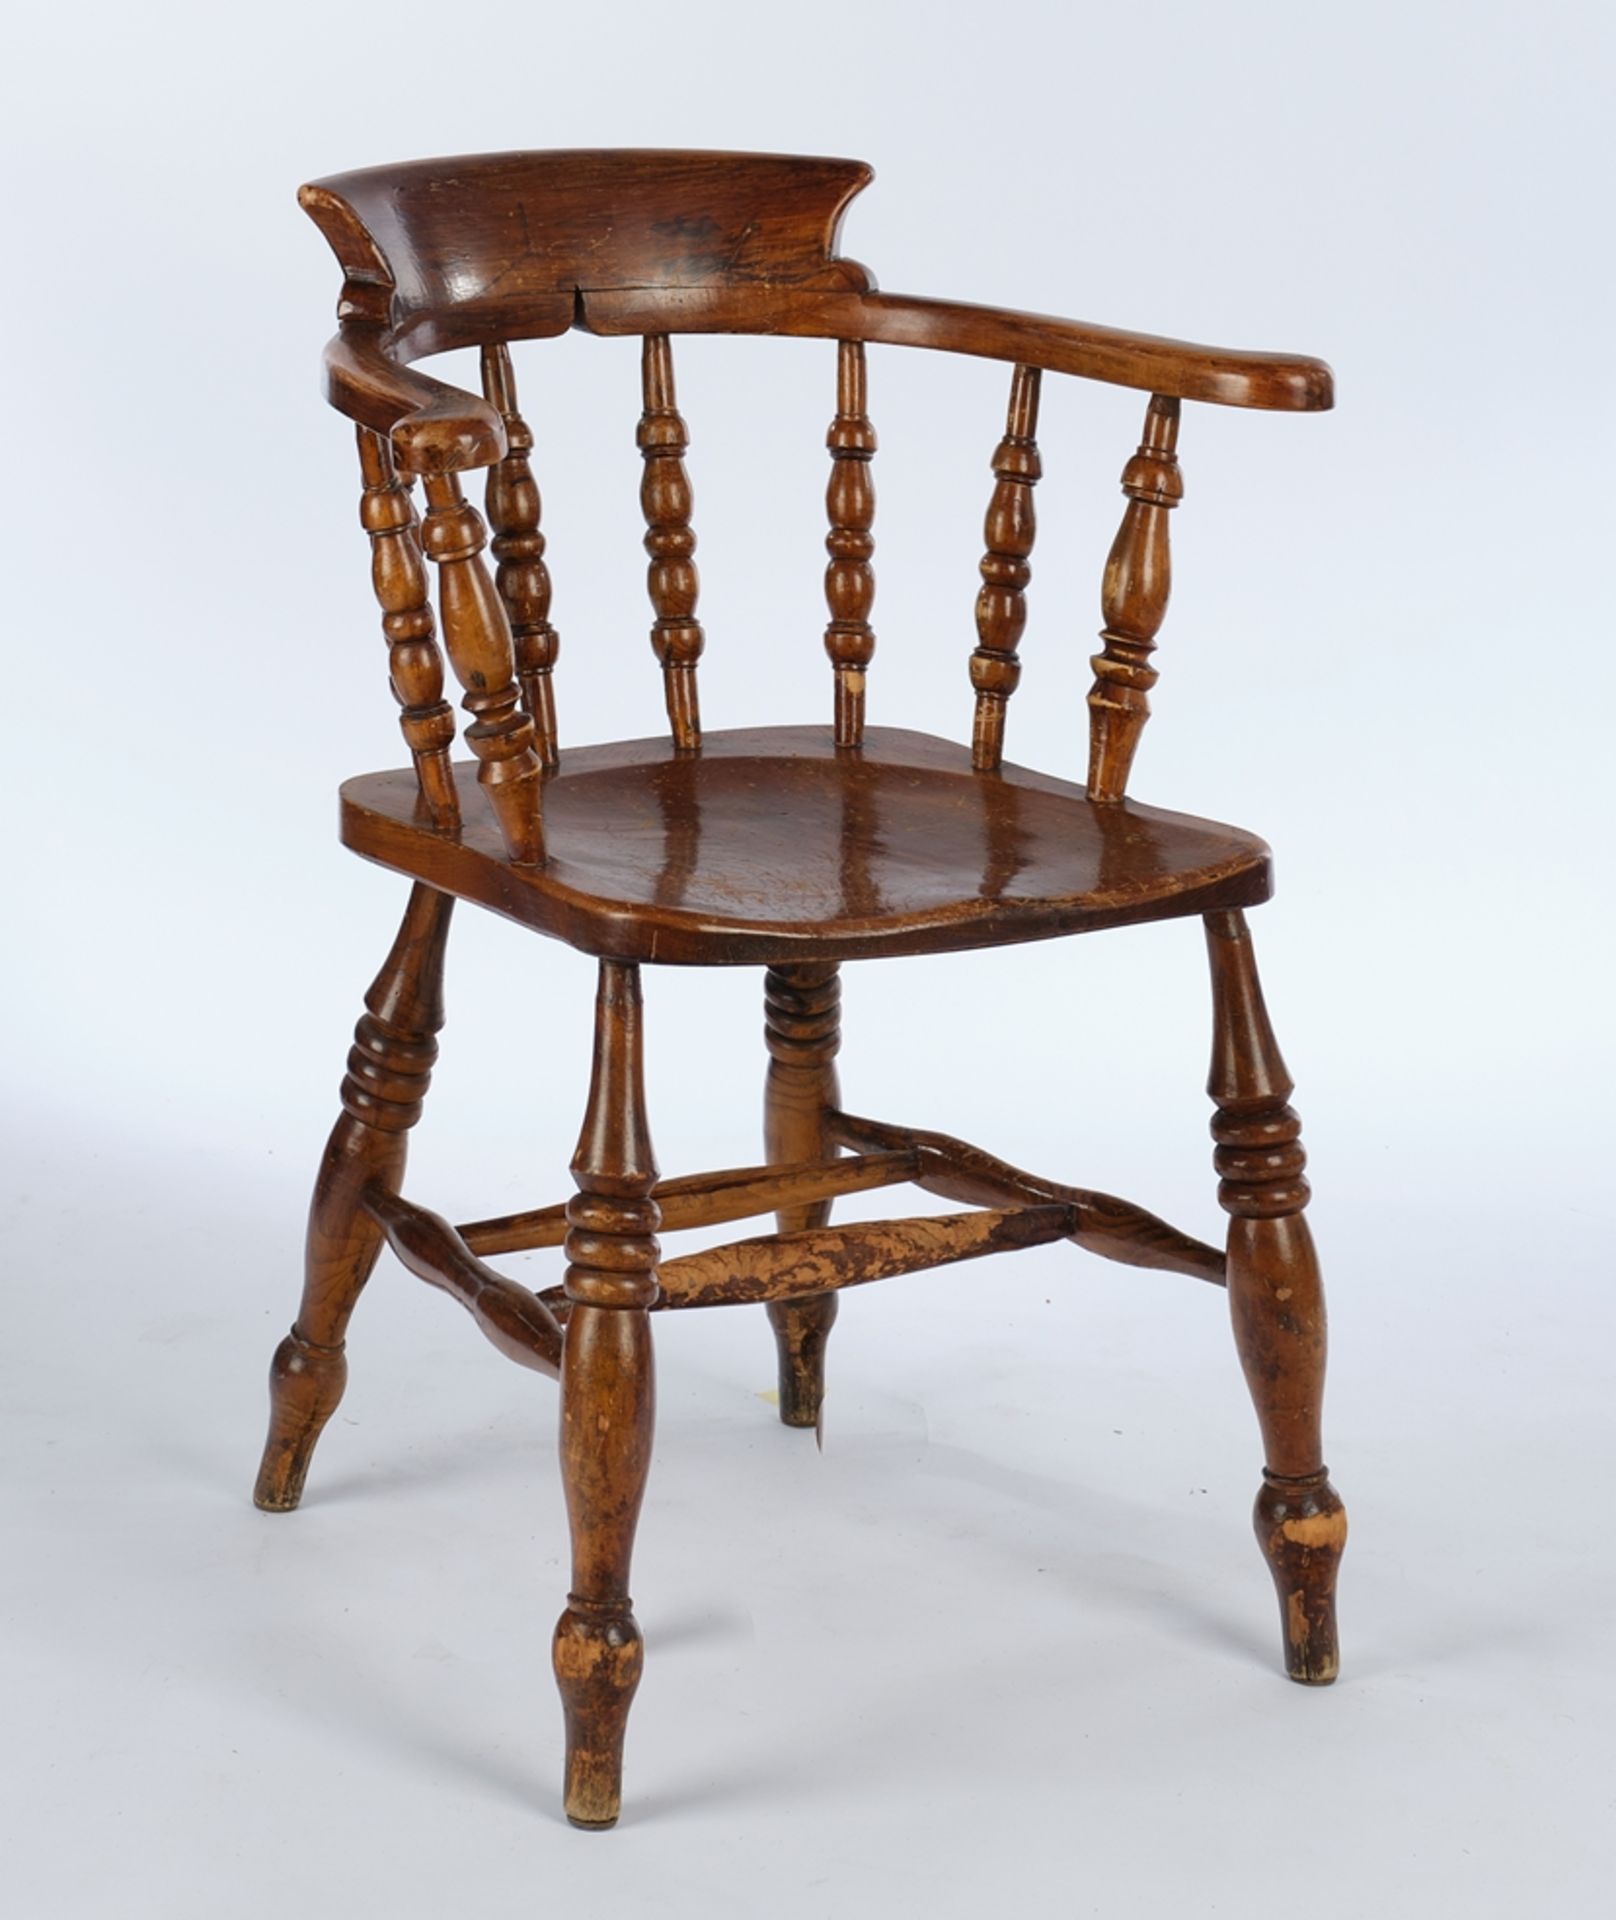 Satz von 4 Windsor Chairs, 19. Jh., Rüster, H. 81 cm, Gebrauchsspuren - Bild 2 aus 3